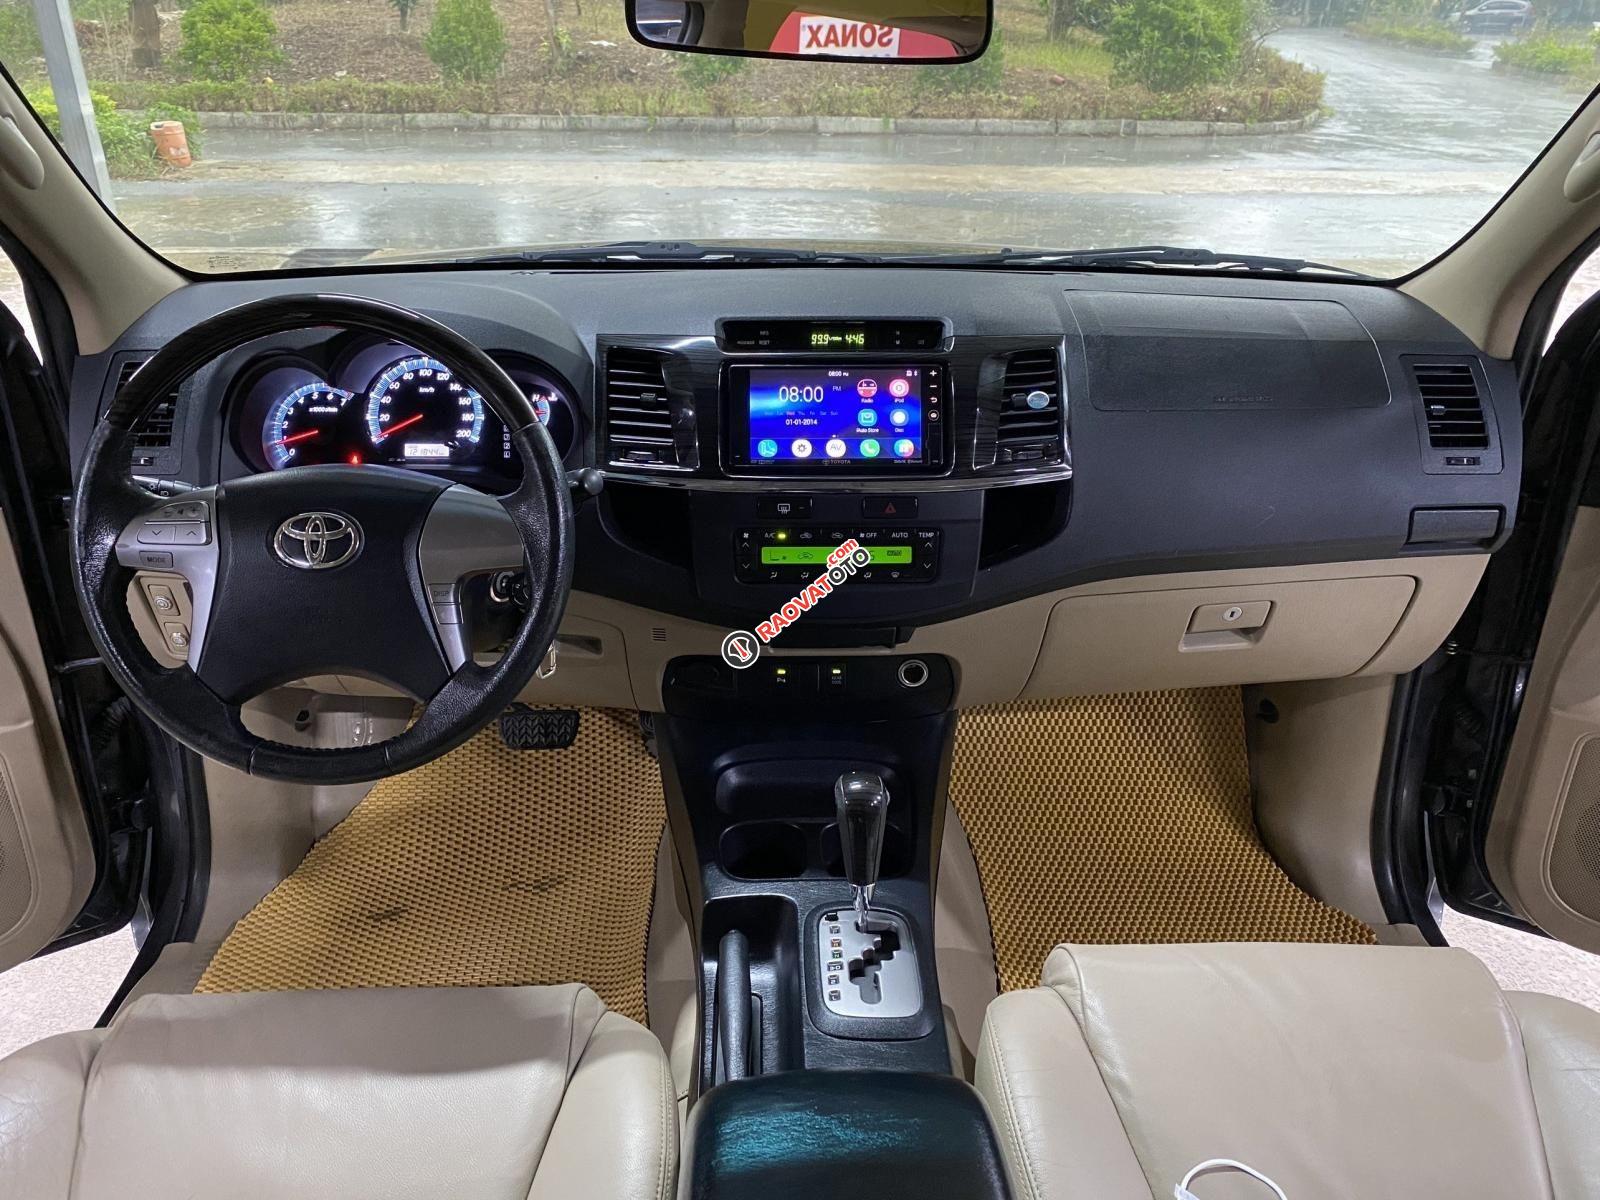 Bán xe Toyota Fortuner V đăng ký lần đầu 2015(chính chủ xử dụng từ đầu) xe gia đình giá chỉ 570tr. Liên hệ 0987888262-10